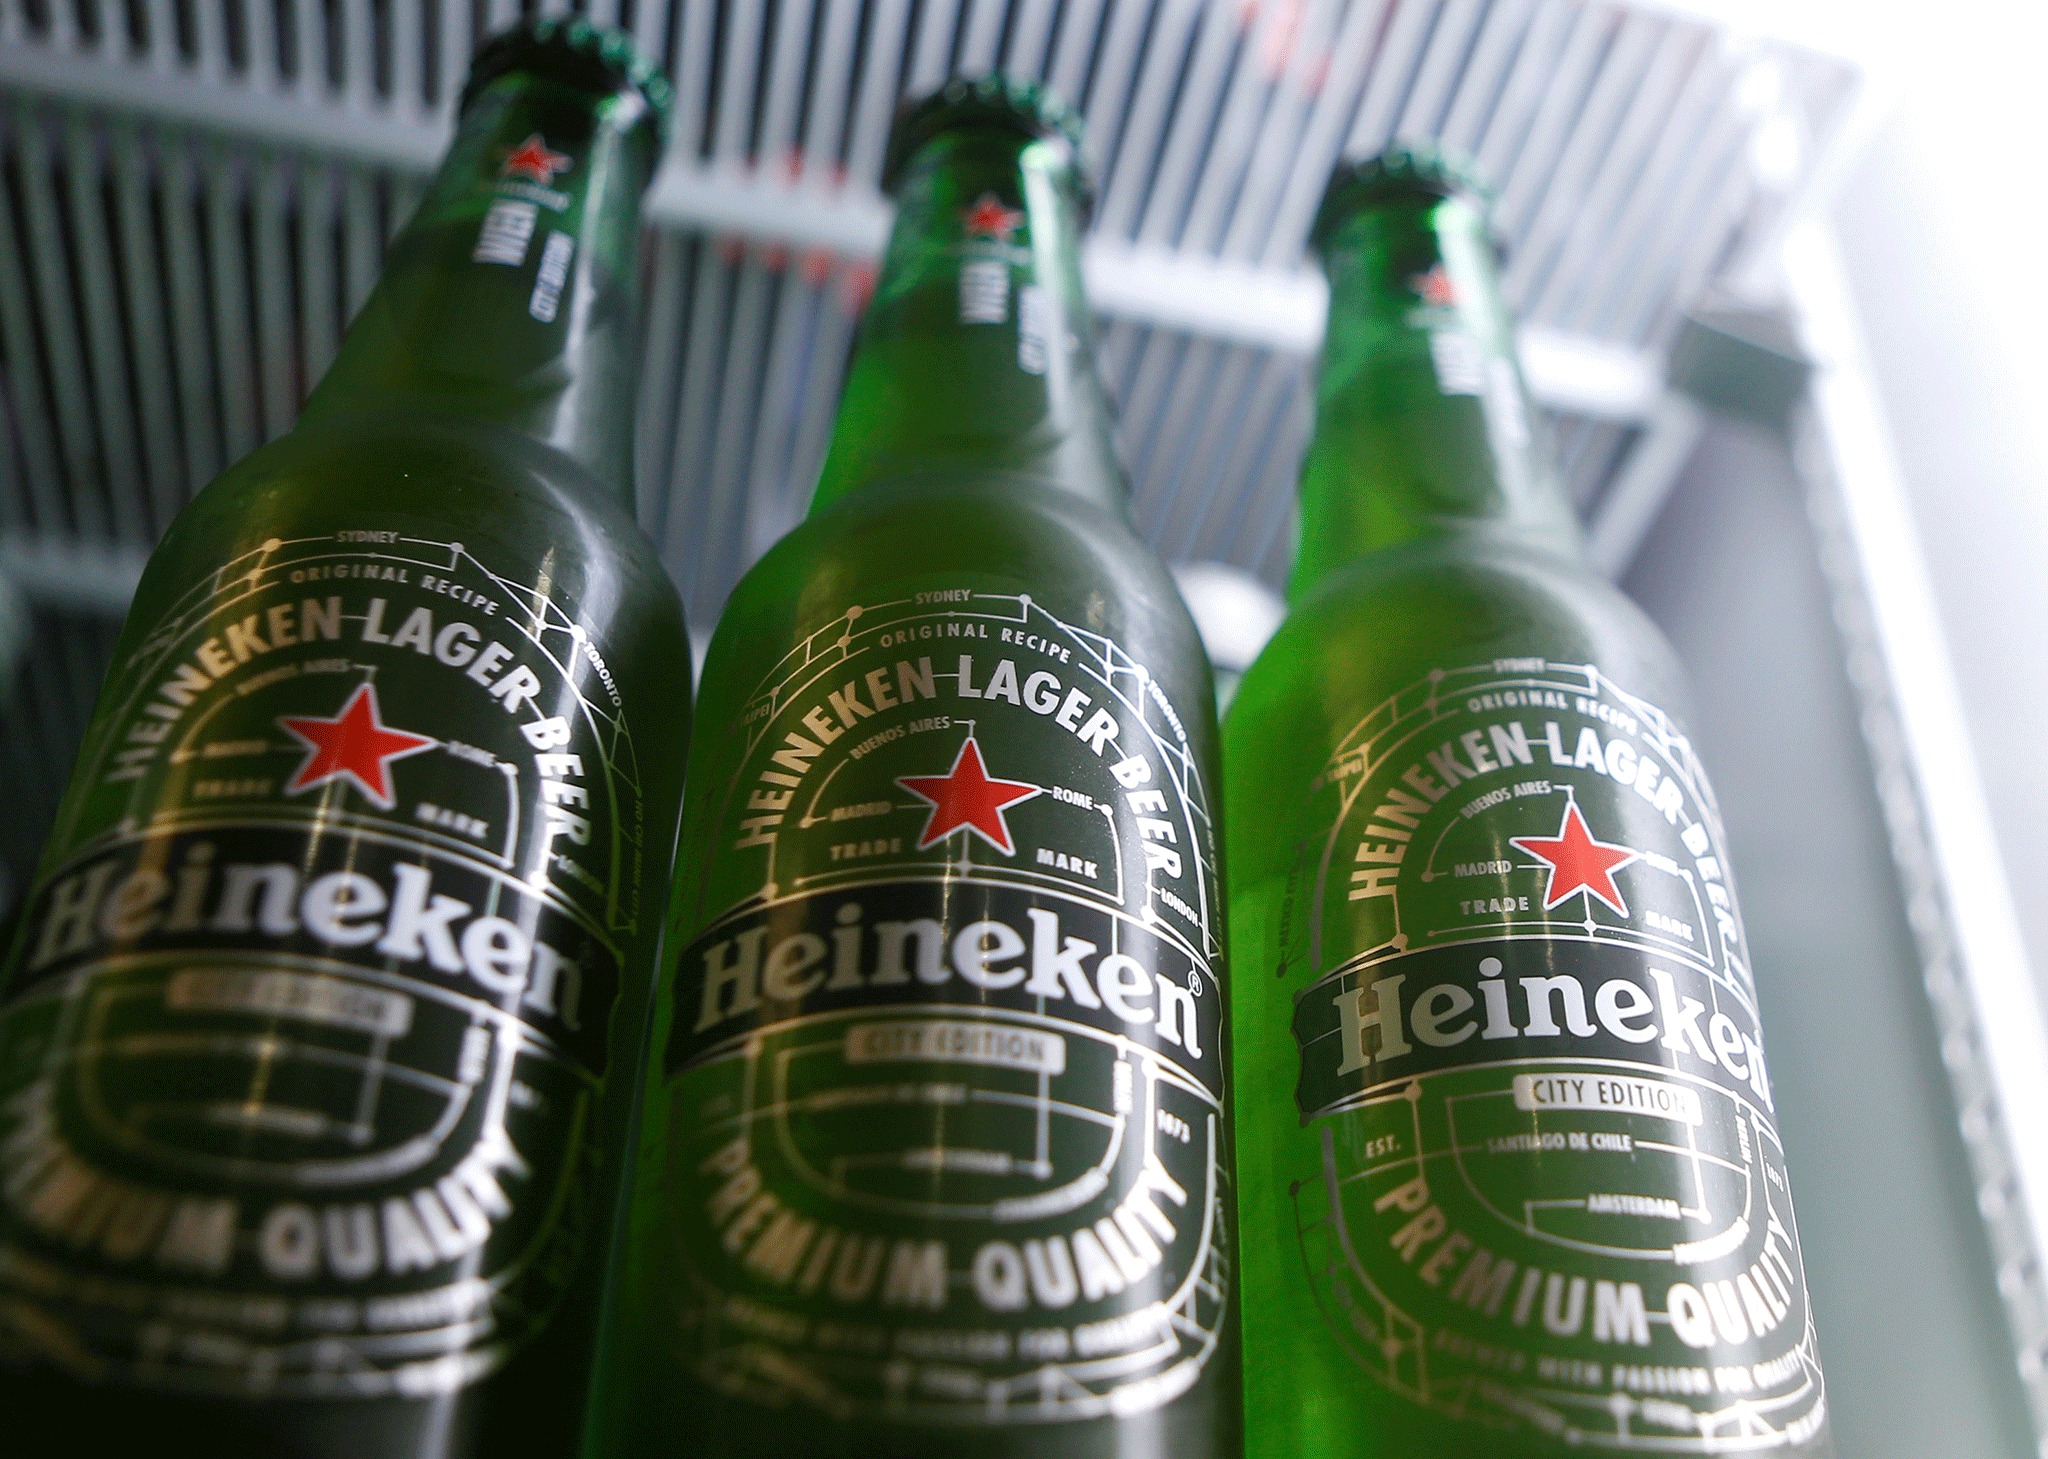 Tesco has stopped selling Heineken beers because of Brexit